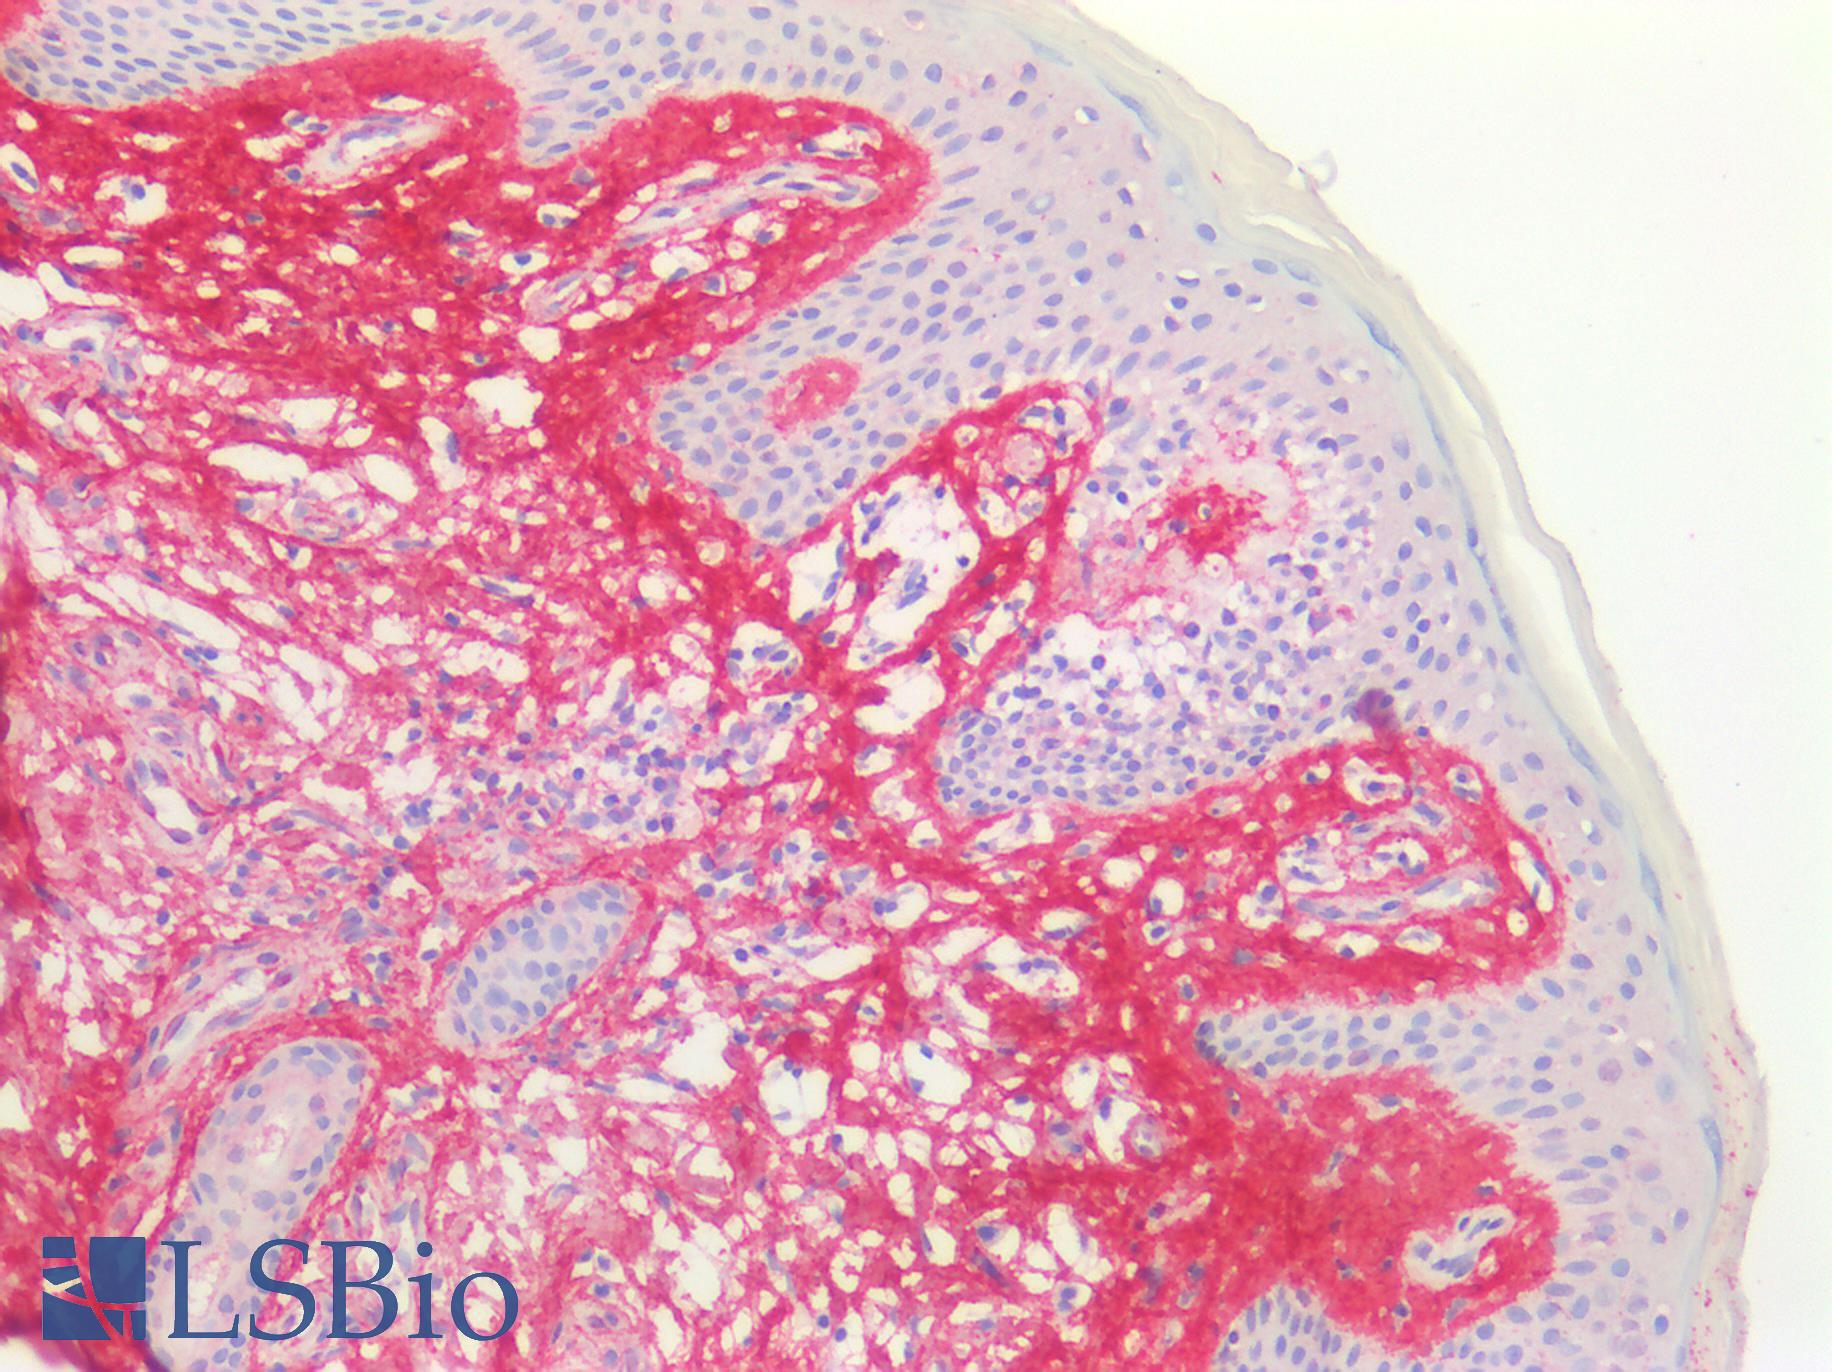 POSTN / Periostin Antibody - Human Skin, Paraffin-Embedded (FFPE)